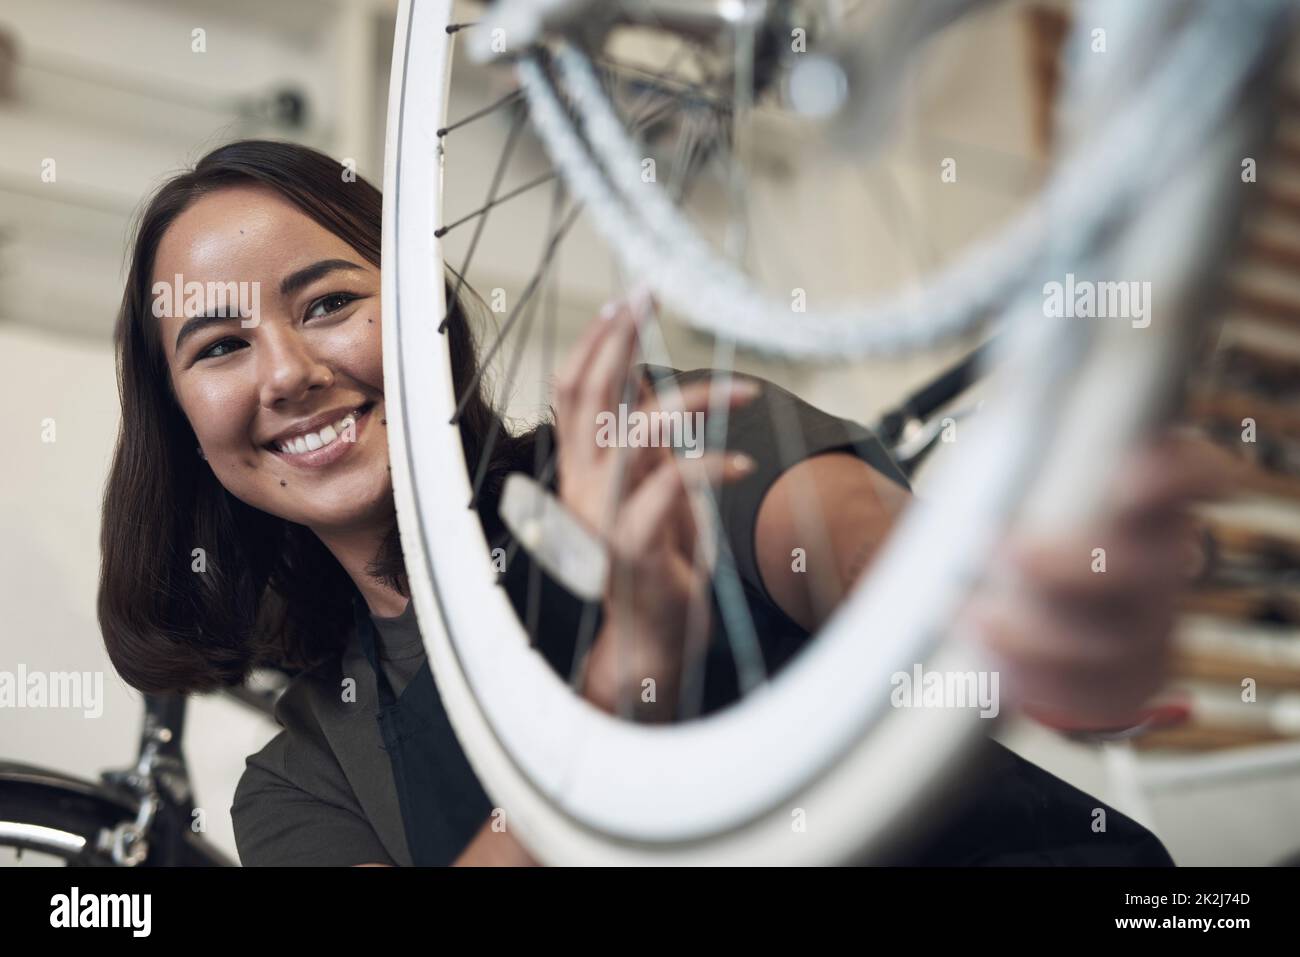 Je peux voir la vie vécue par ce vélo. Photo d'une jeune femme attirante debout seule dans son atelier et en train de réparer une roue de vélo. Banque D'Images